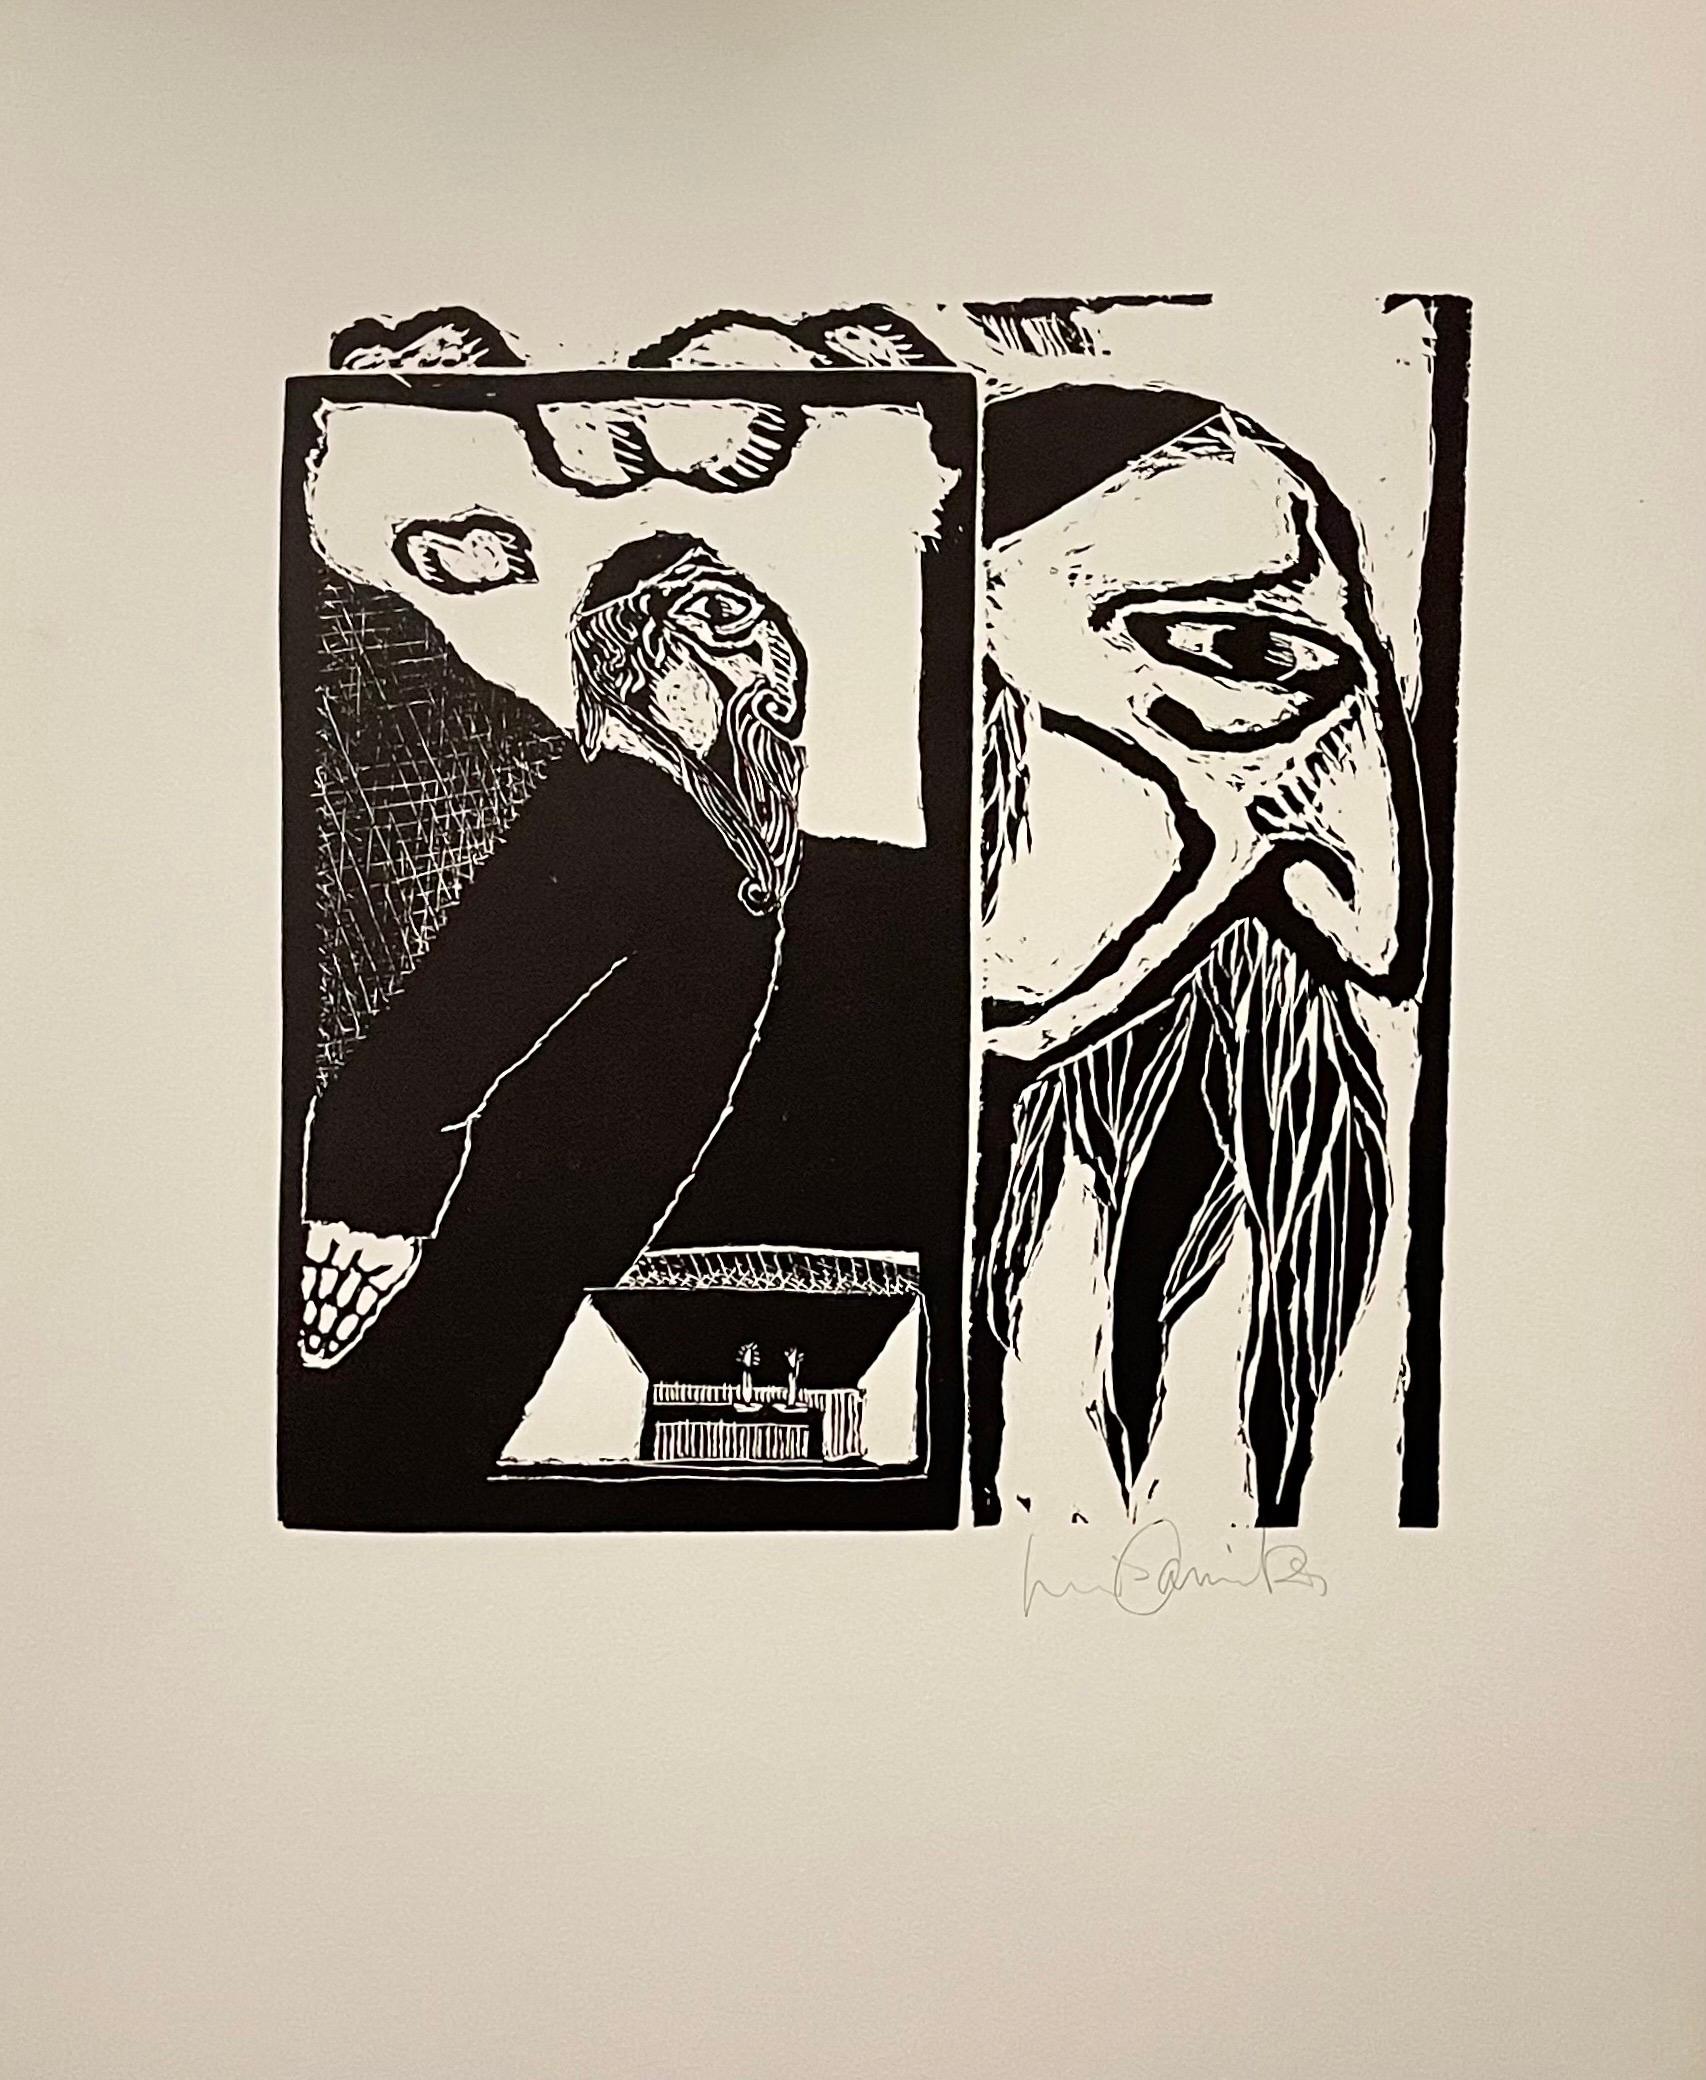 Luis Camnitzer et Martin Buber (1878-1965), 
New York : JMB Publishers Ltd, 1970.
Imprimé à l'Atelier graphique de New York. 
Signé à la main sur papier Arches. (Edition 24/100, numérotée sur la page de justification)

Gravures sur bois basées sur